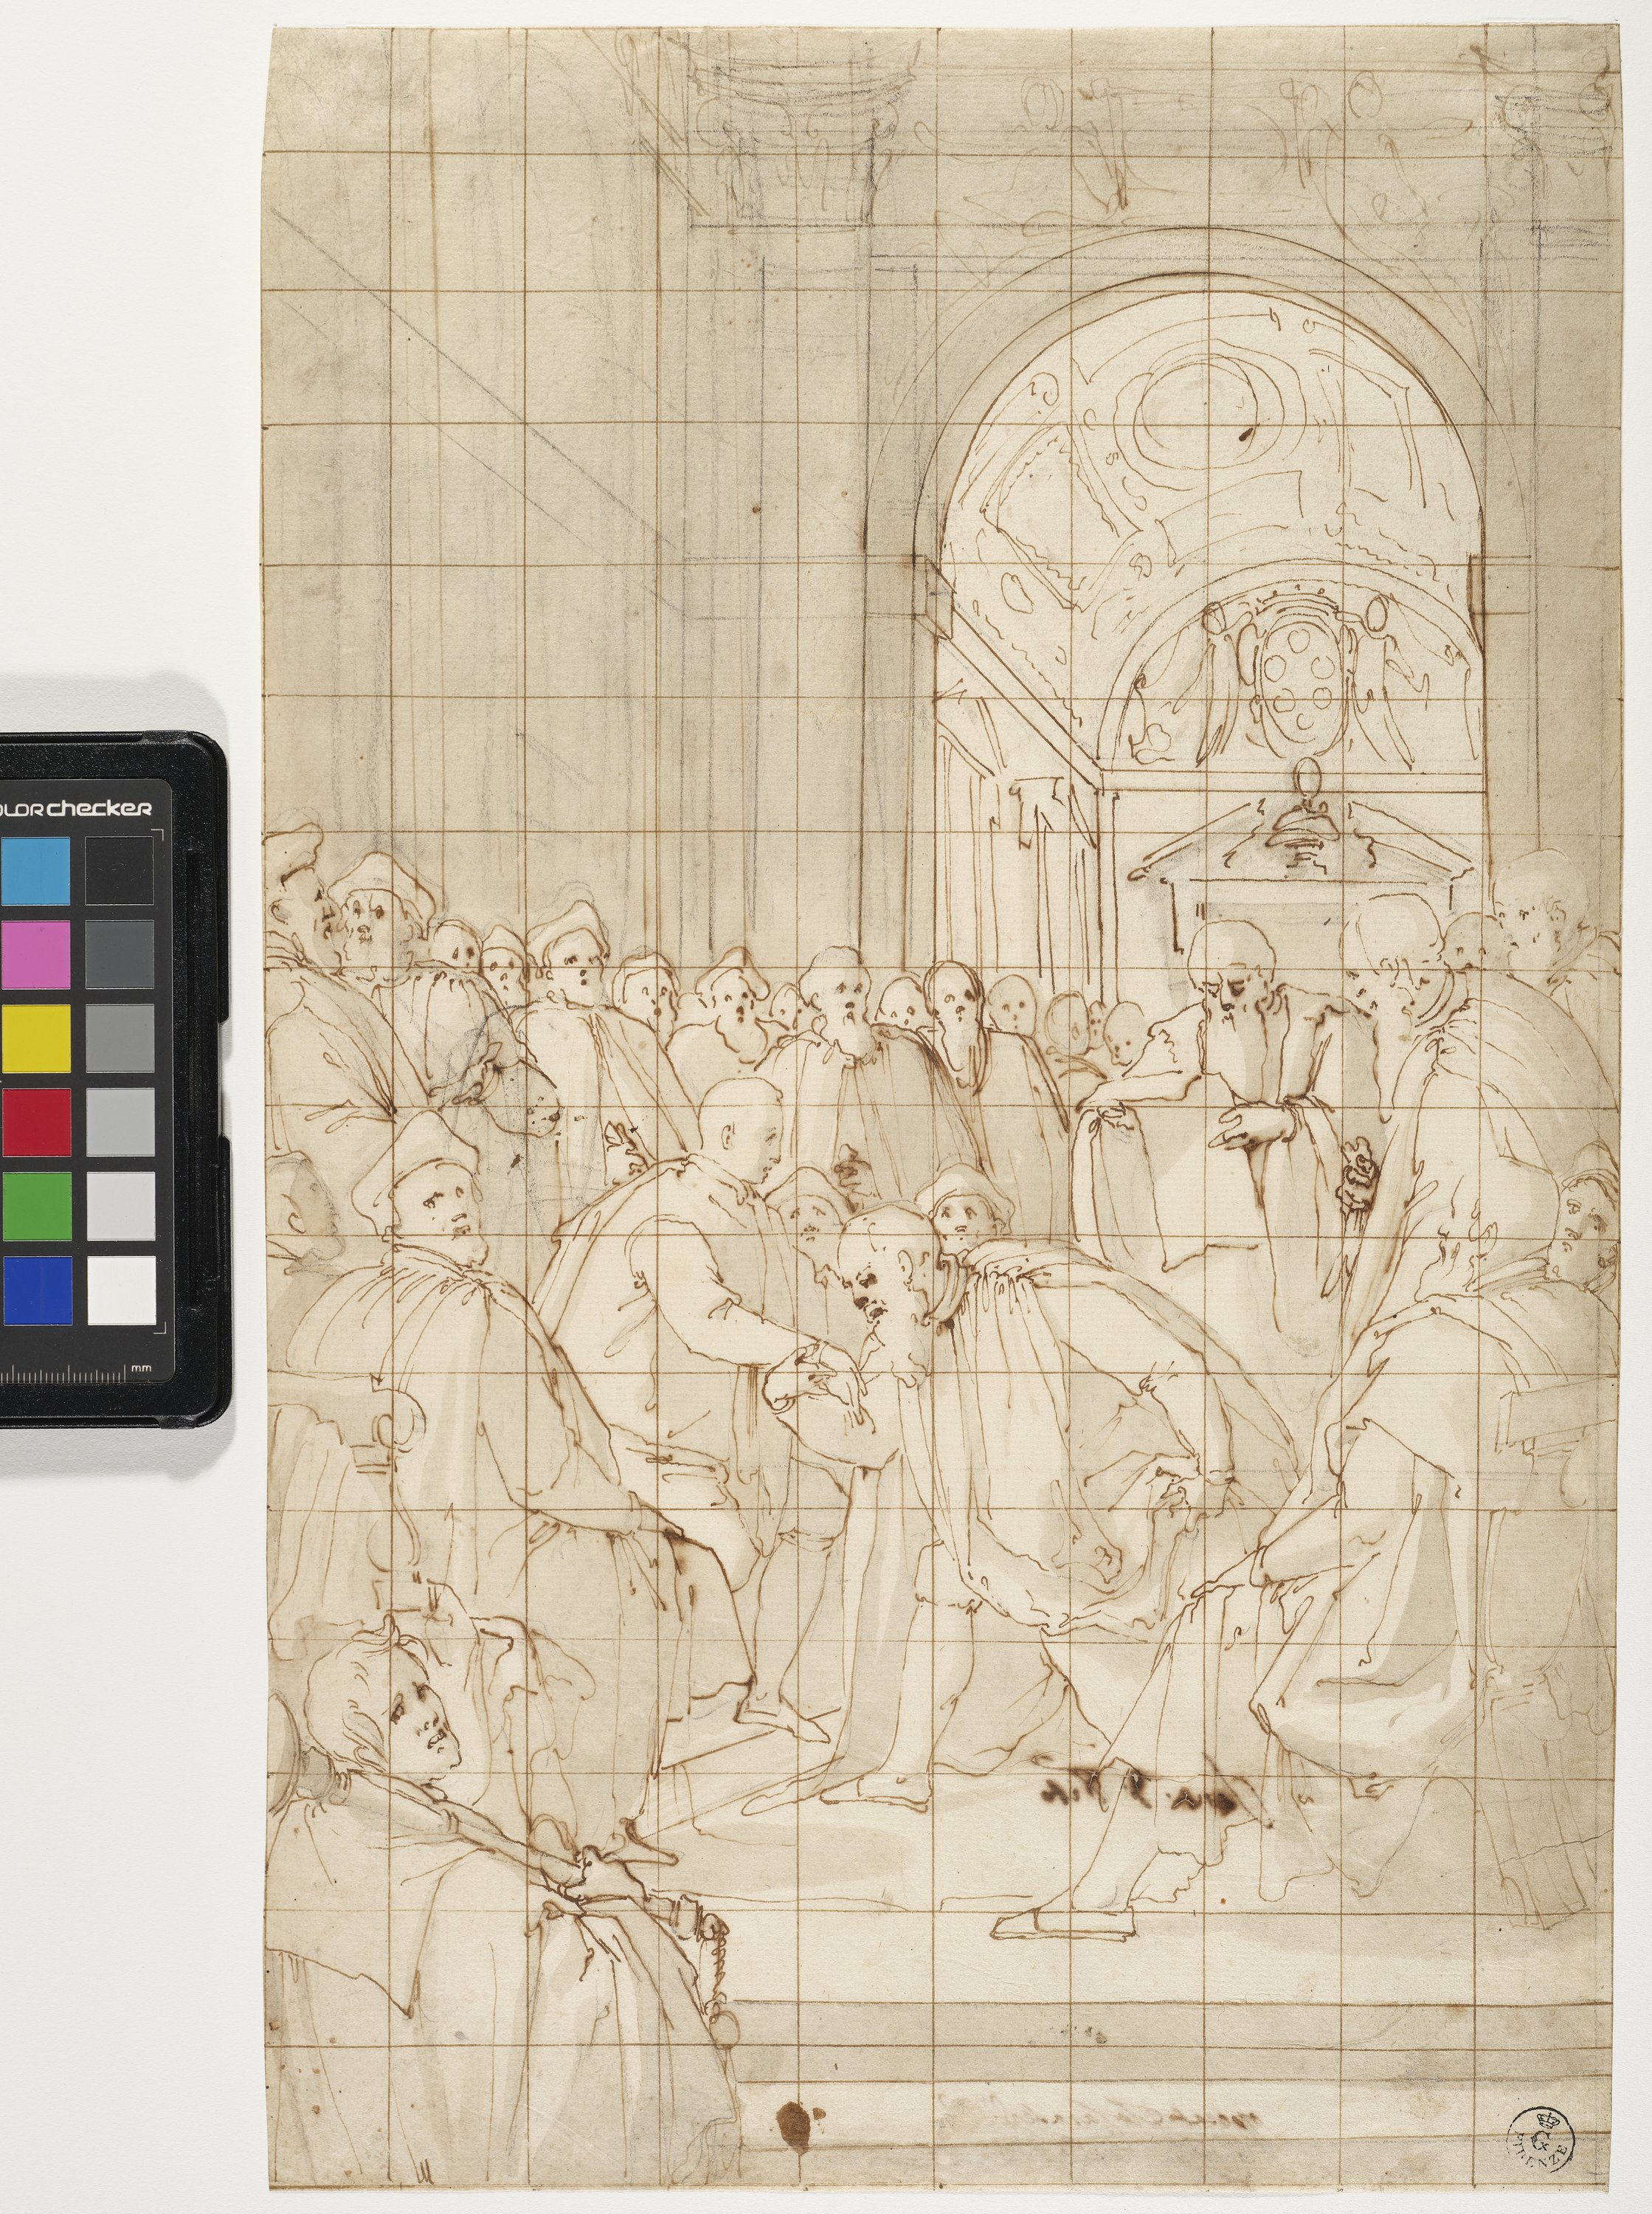 Studio per elezione di Cosimo I a duca di Firenze (disegno) di Chimenti Jacopo detto Empoli (XVI)